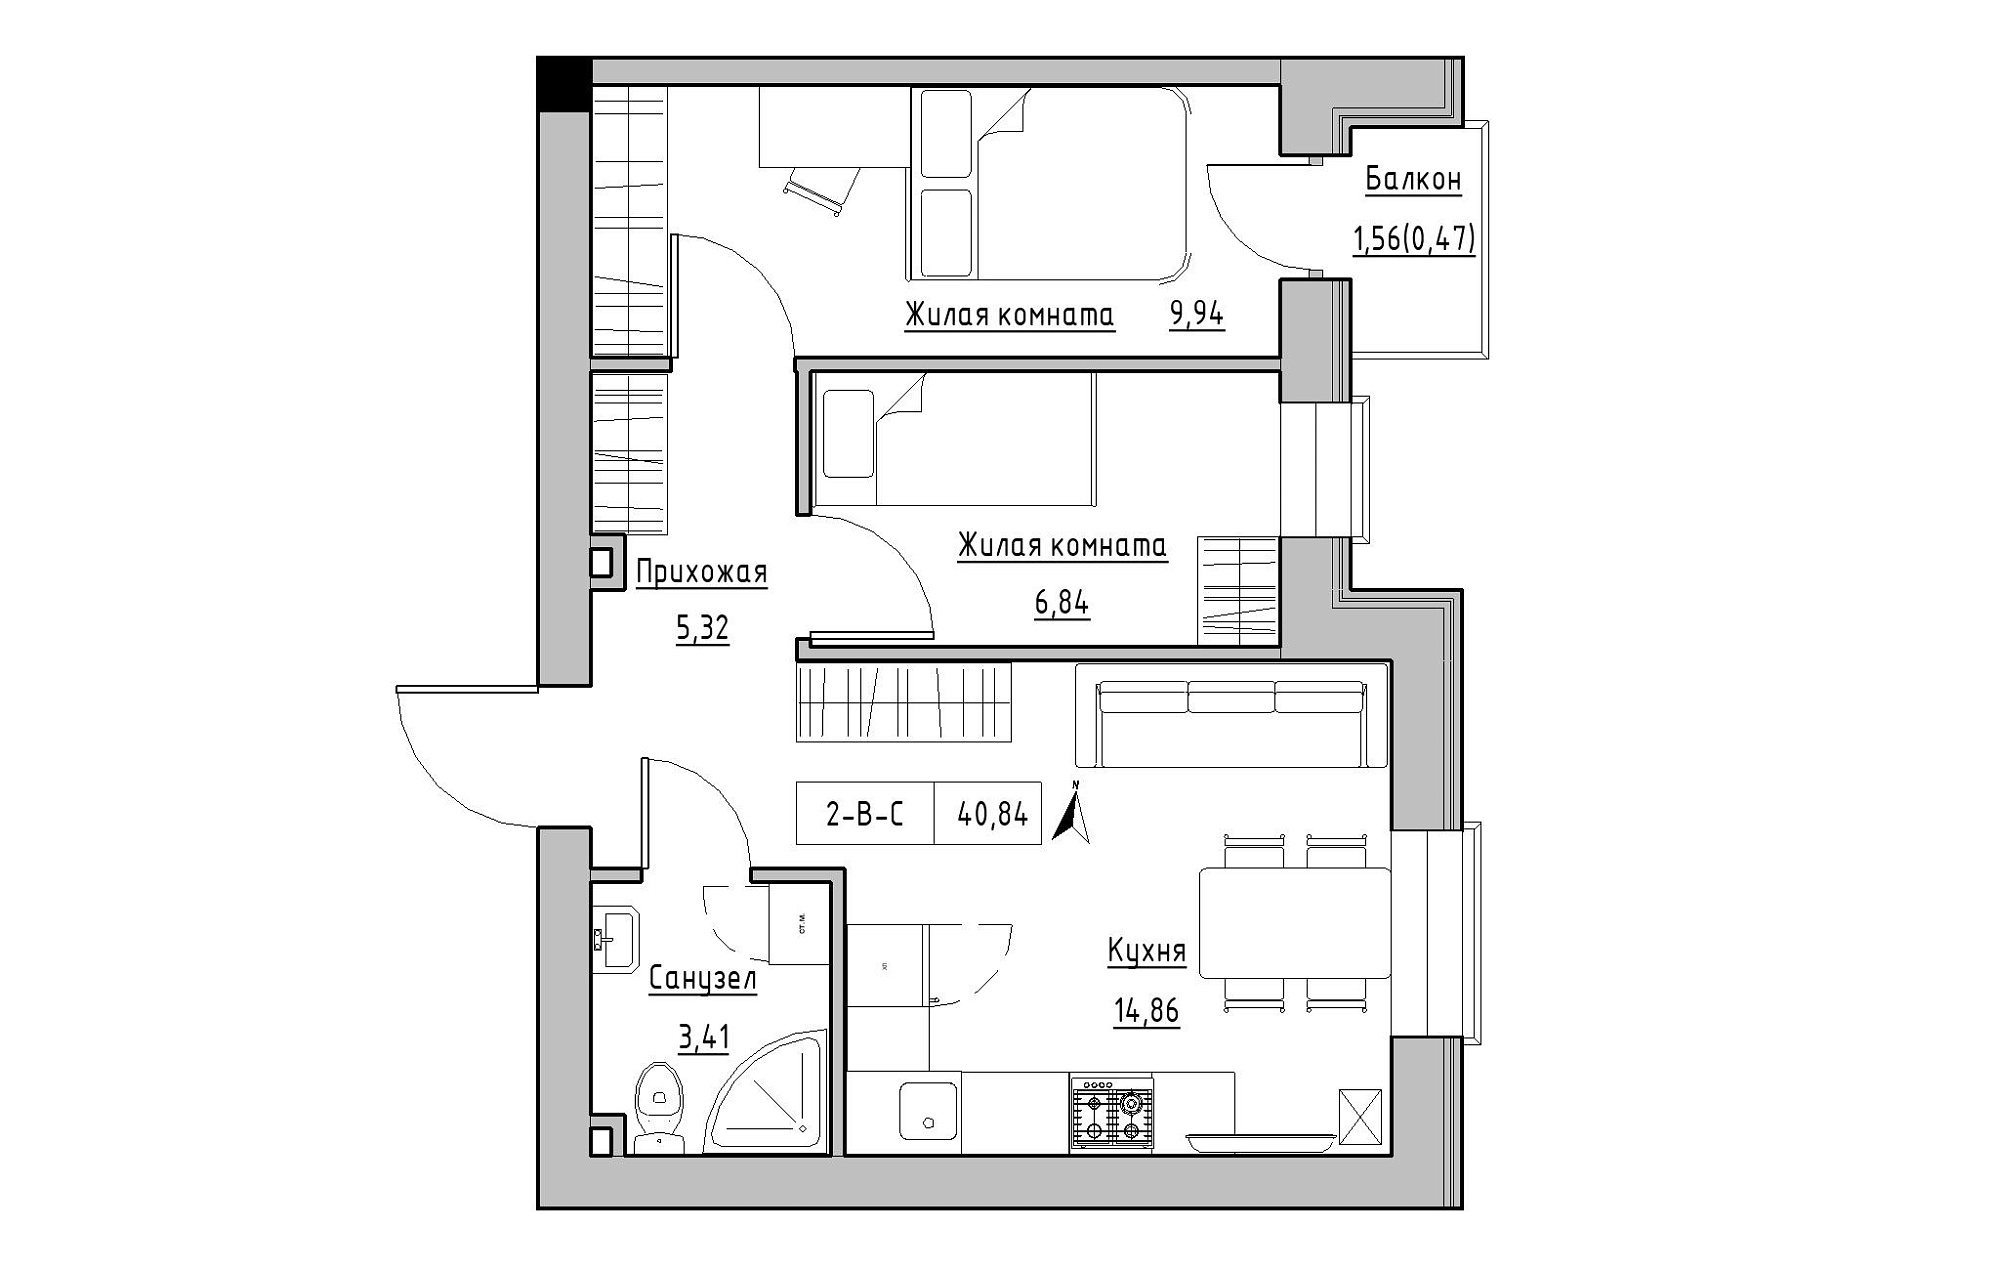 Планування 2-к квартира площею 40.84м2, KS-019-03/0006.